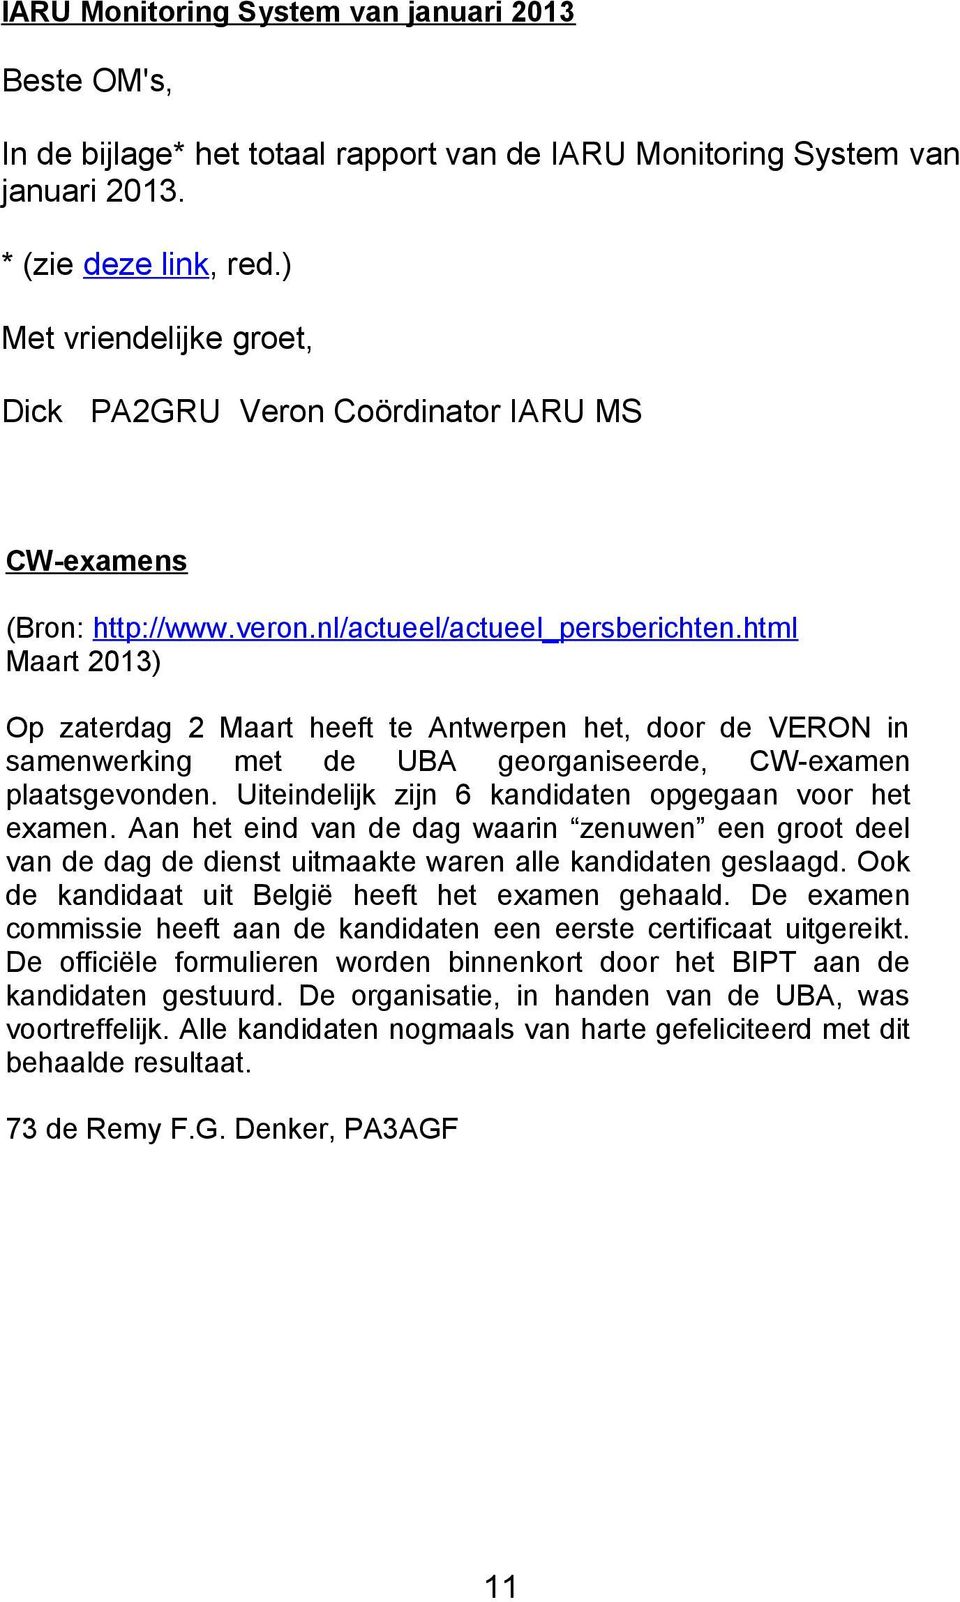 html Maart 2013) Op zaterdag 2 Maart heeft te Antwerpen het, door de VERON in samenwerking met de UBA georganiseerde, CW-examen plaatsgevonden. Uiteindelijk zijn 6 kandidaten opgegaan voor het examen.